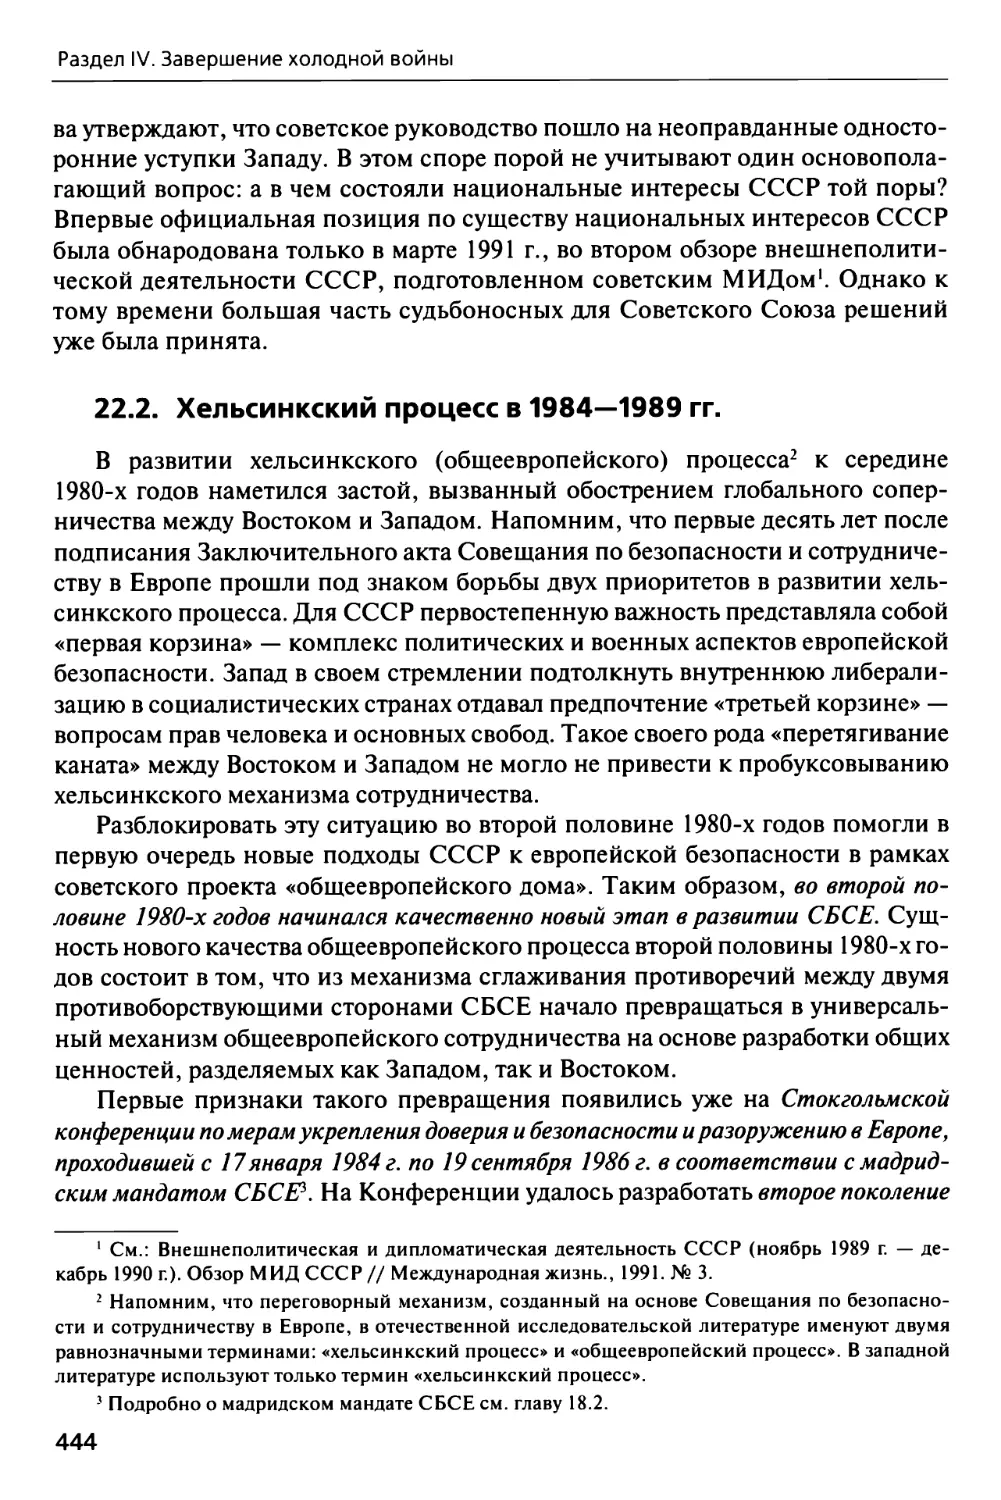 22.2. Хельсинкский процесс в 1984—1989 гг.